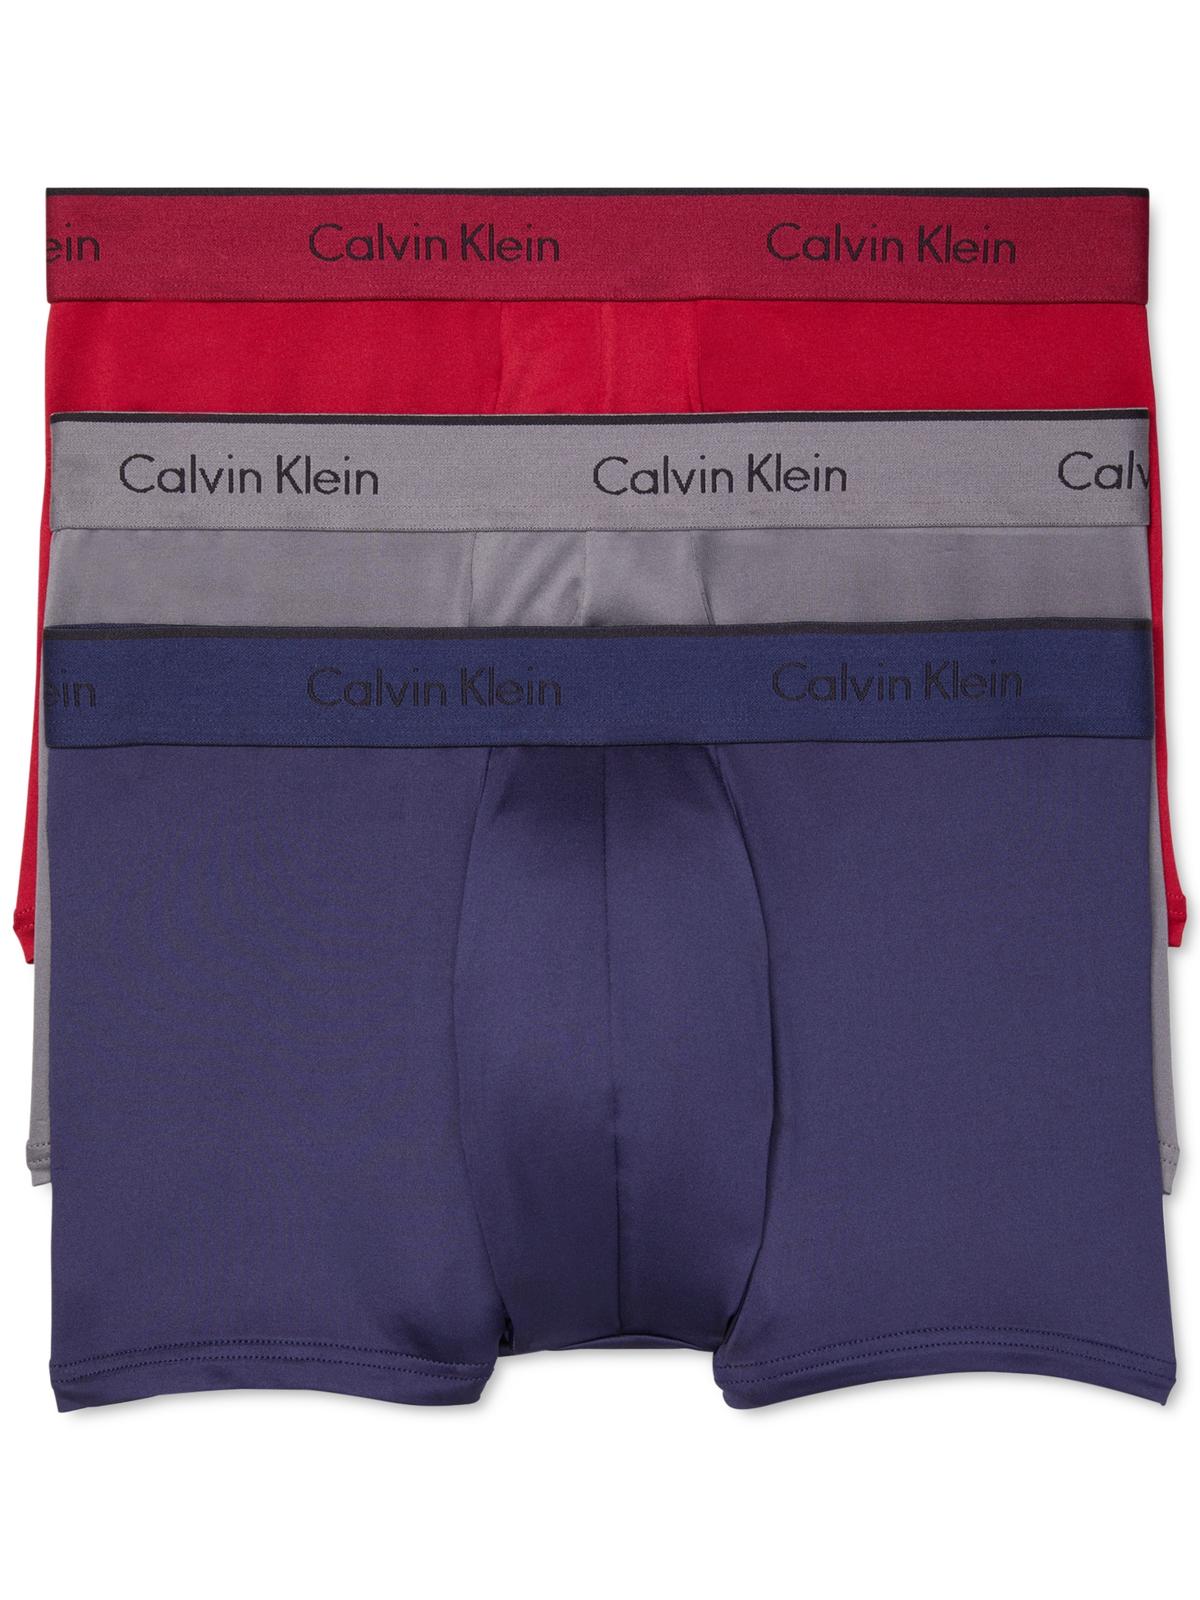 Calvin Klein Men's 3 Pack Logo Boxer Briefs Underwear Red Size X-Large